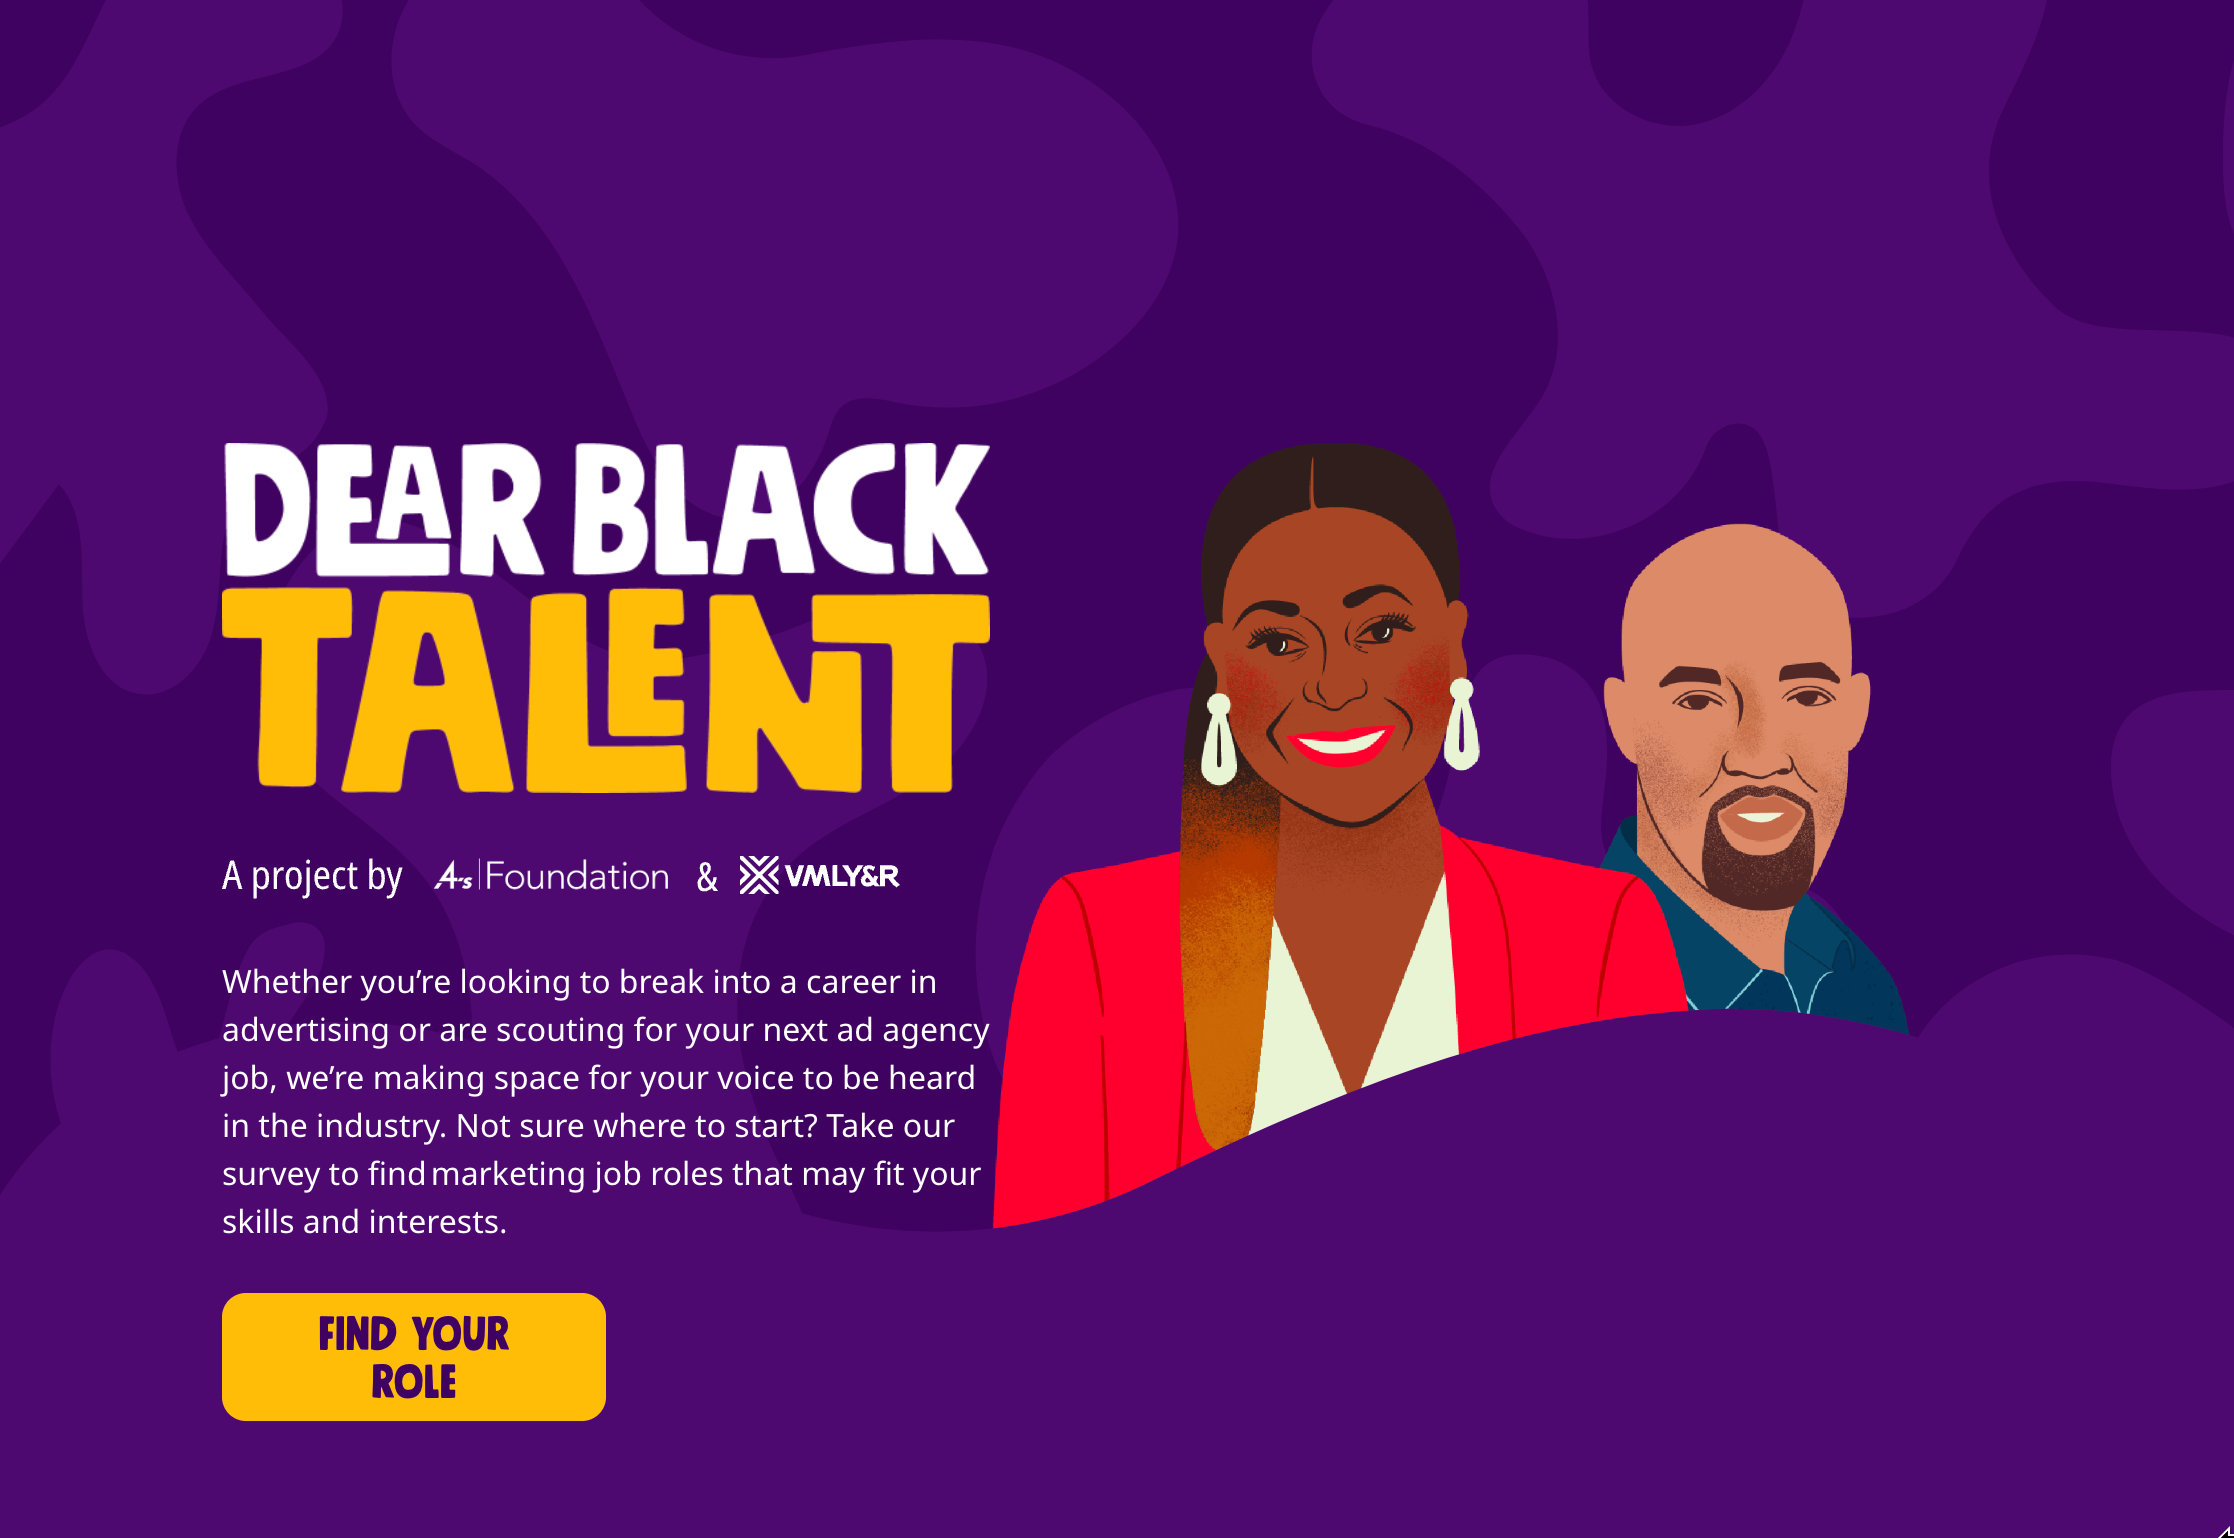 Dear Black Talent